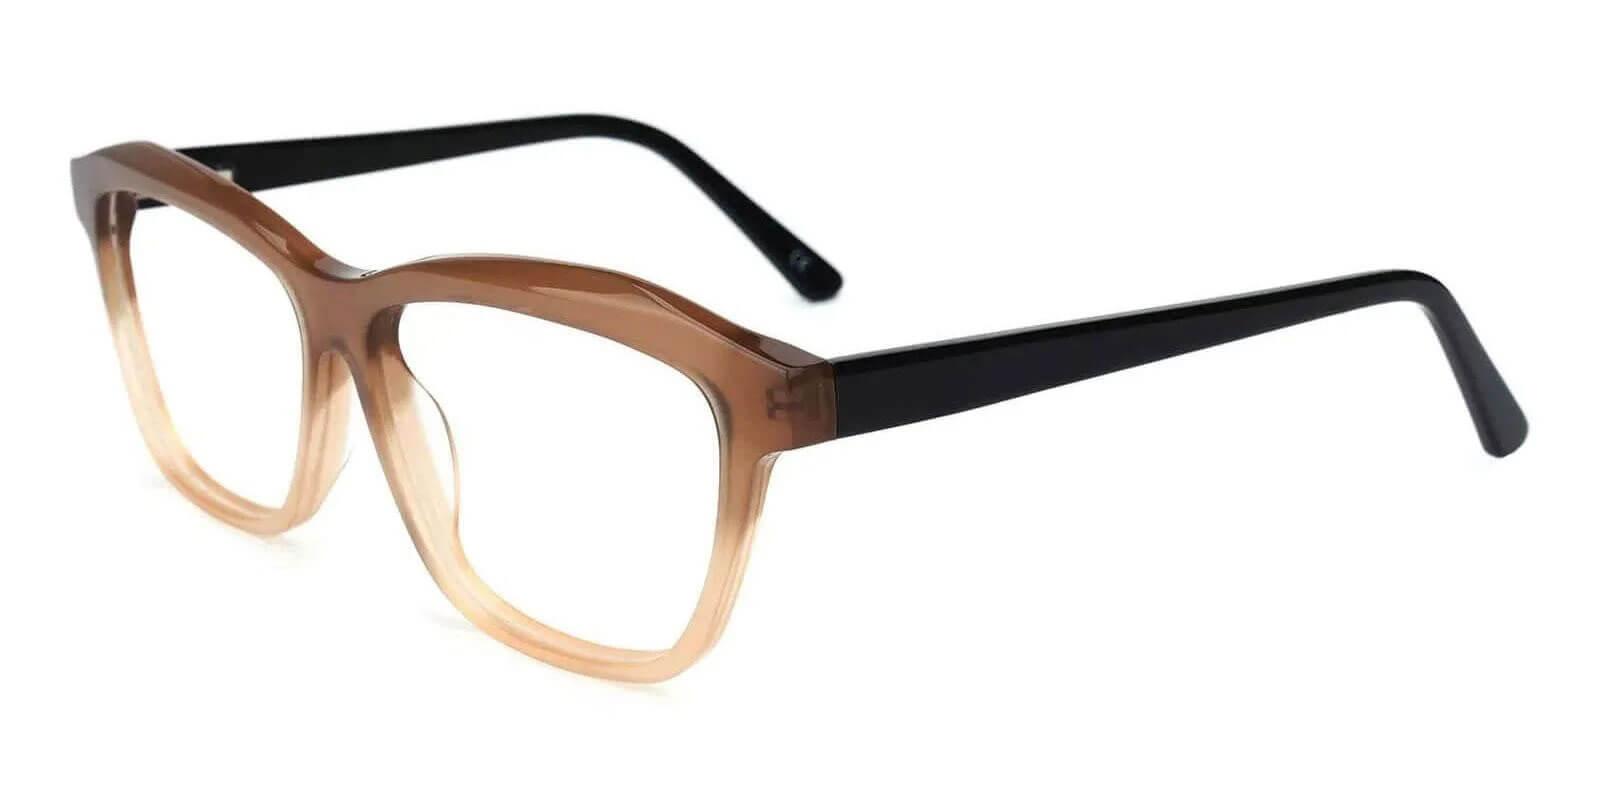 Sonia Cream Acetate Eyeglasses , SpringHinges , UniversalBridgeFit Frames from ABBE Glasses